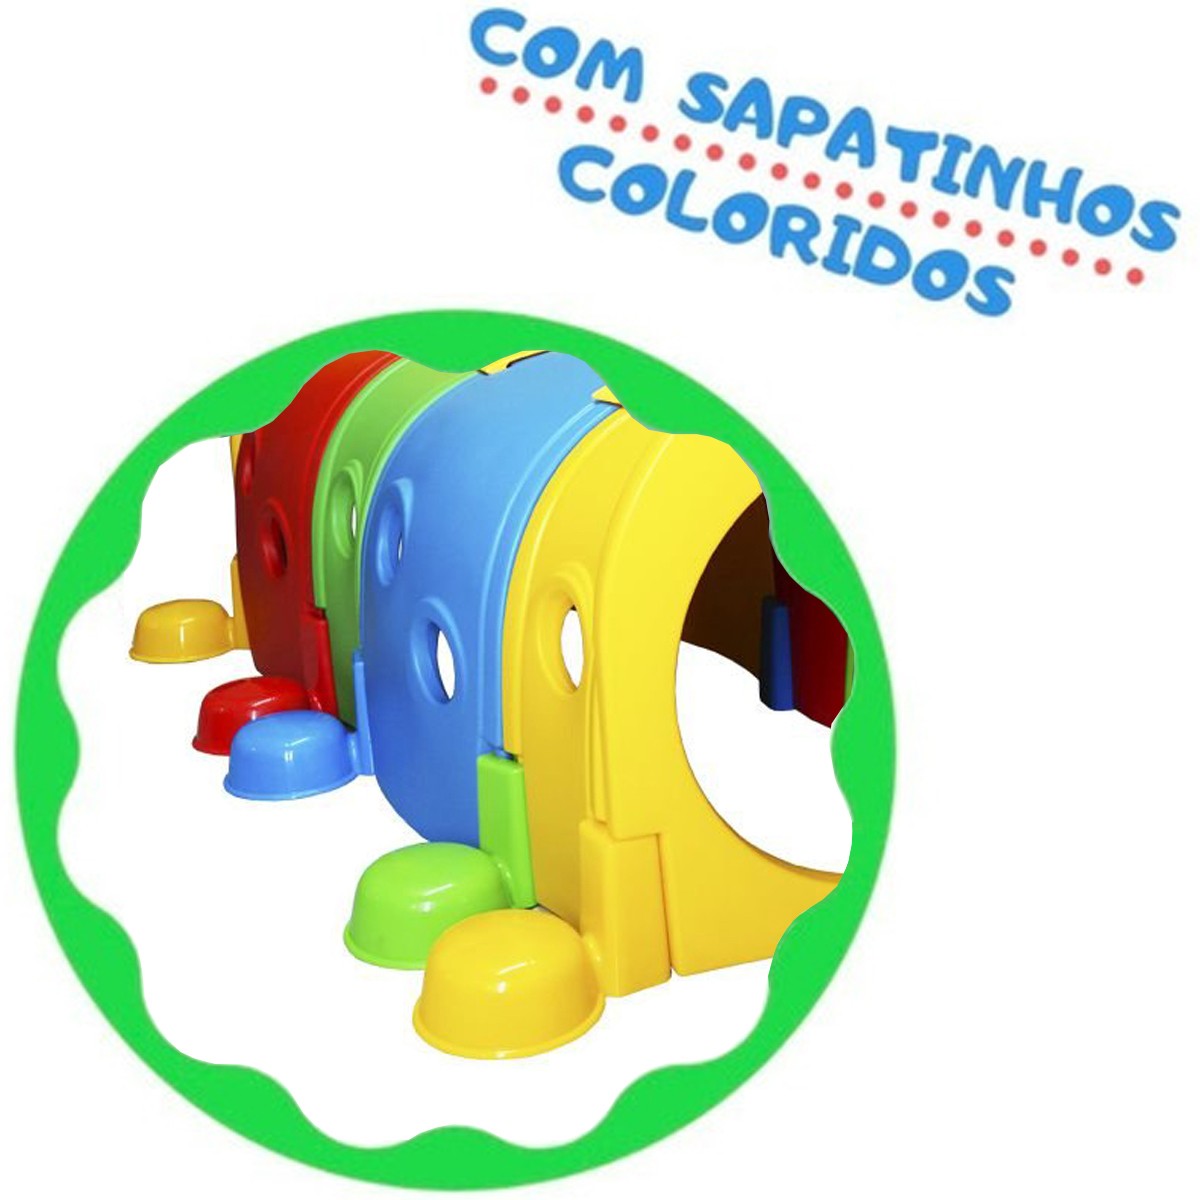 Brinquedo de Playground Infantil Túnel Centopeia 105x175cm Crianças A Partir +3 Anos - Brinqway